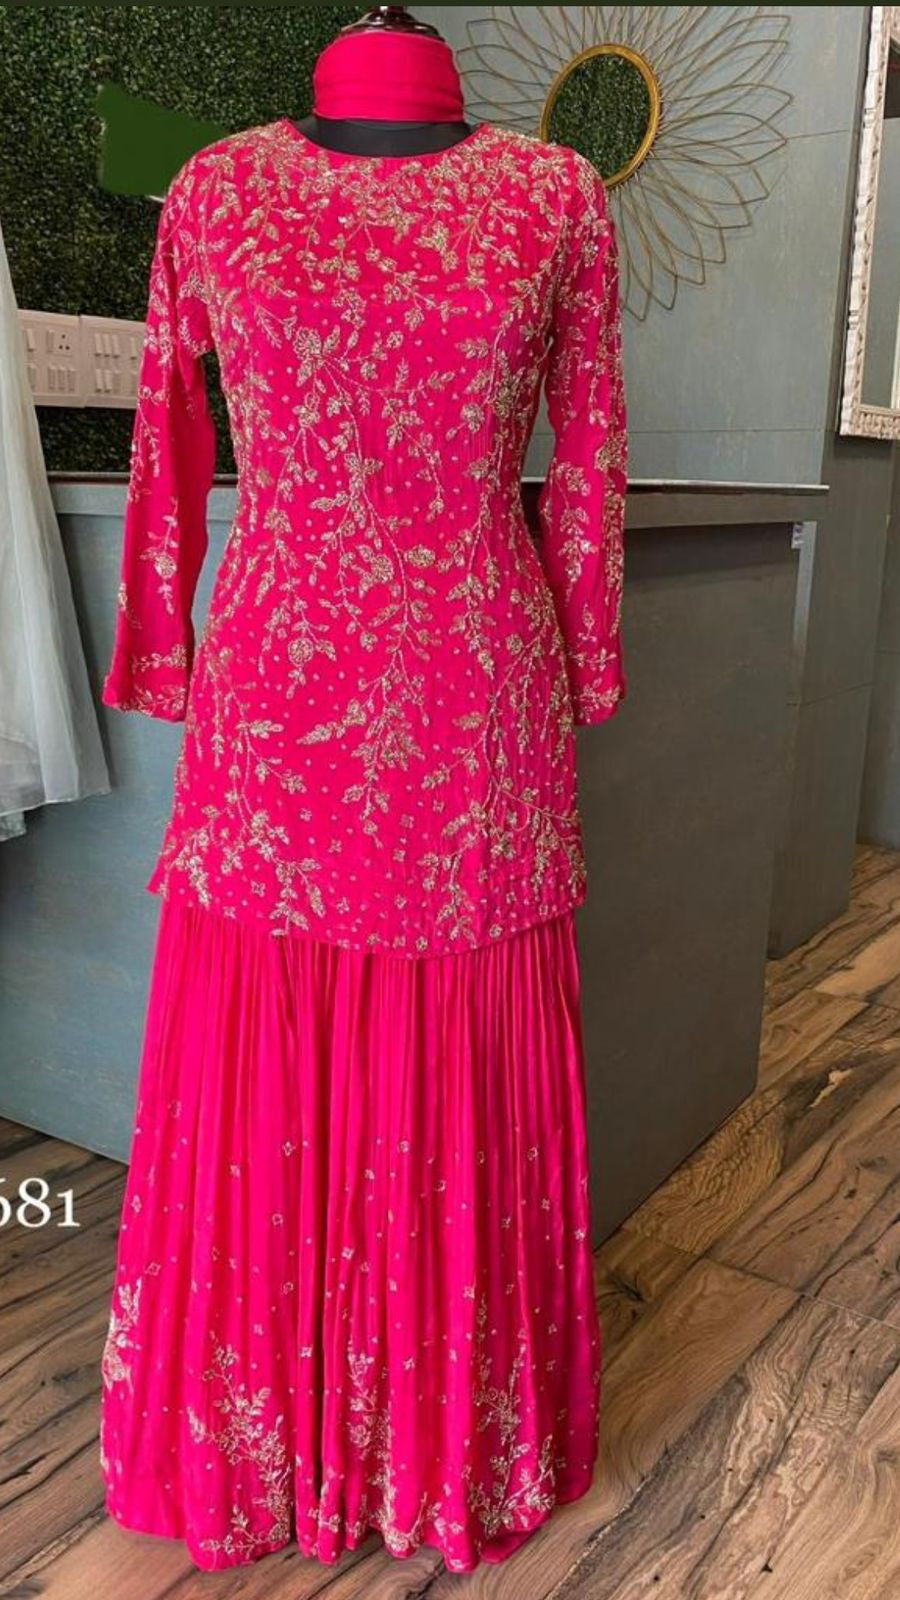 Rivisha kurta gharara dress indowestern dress